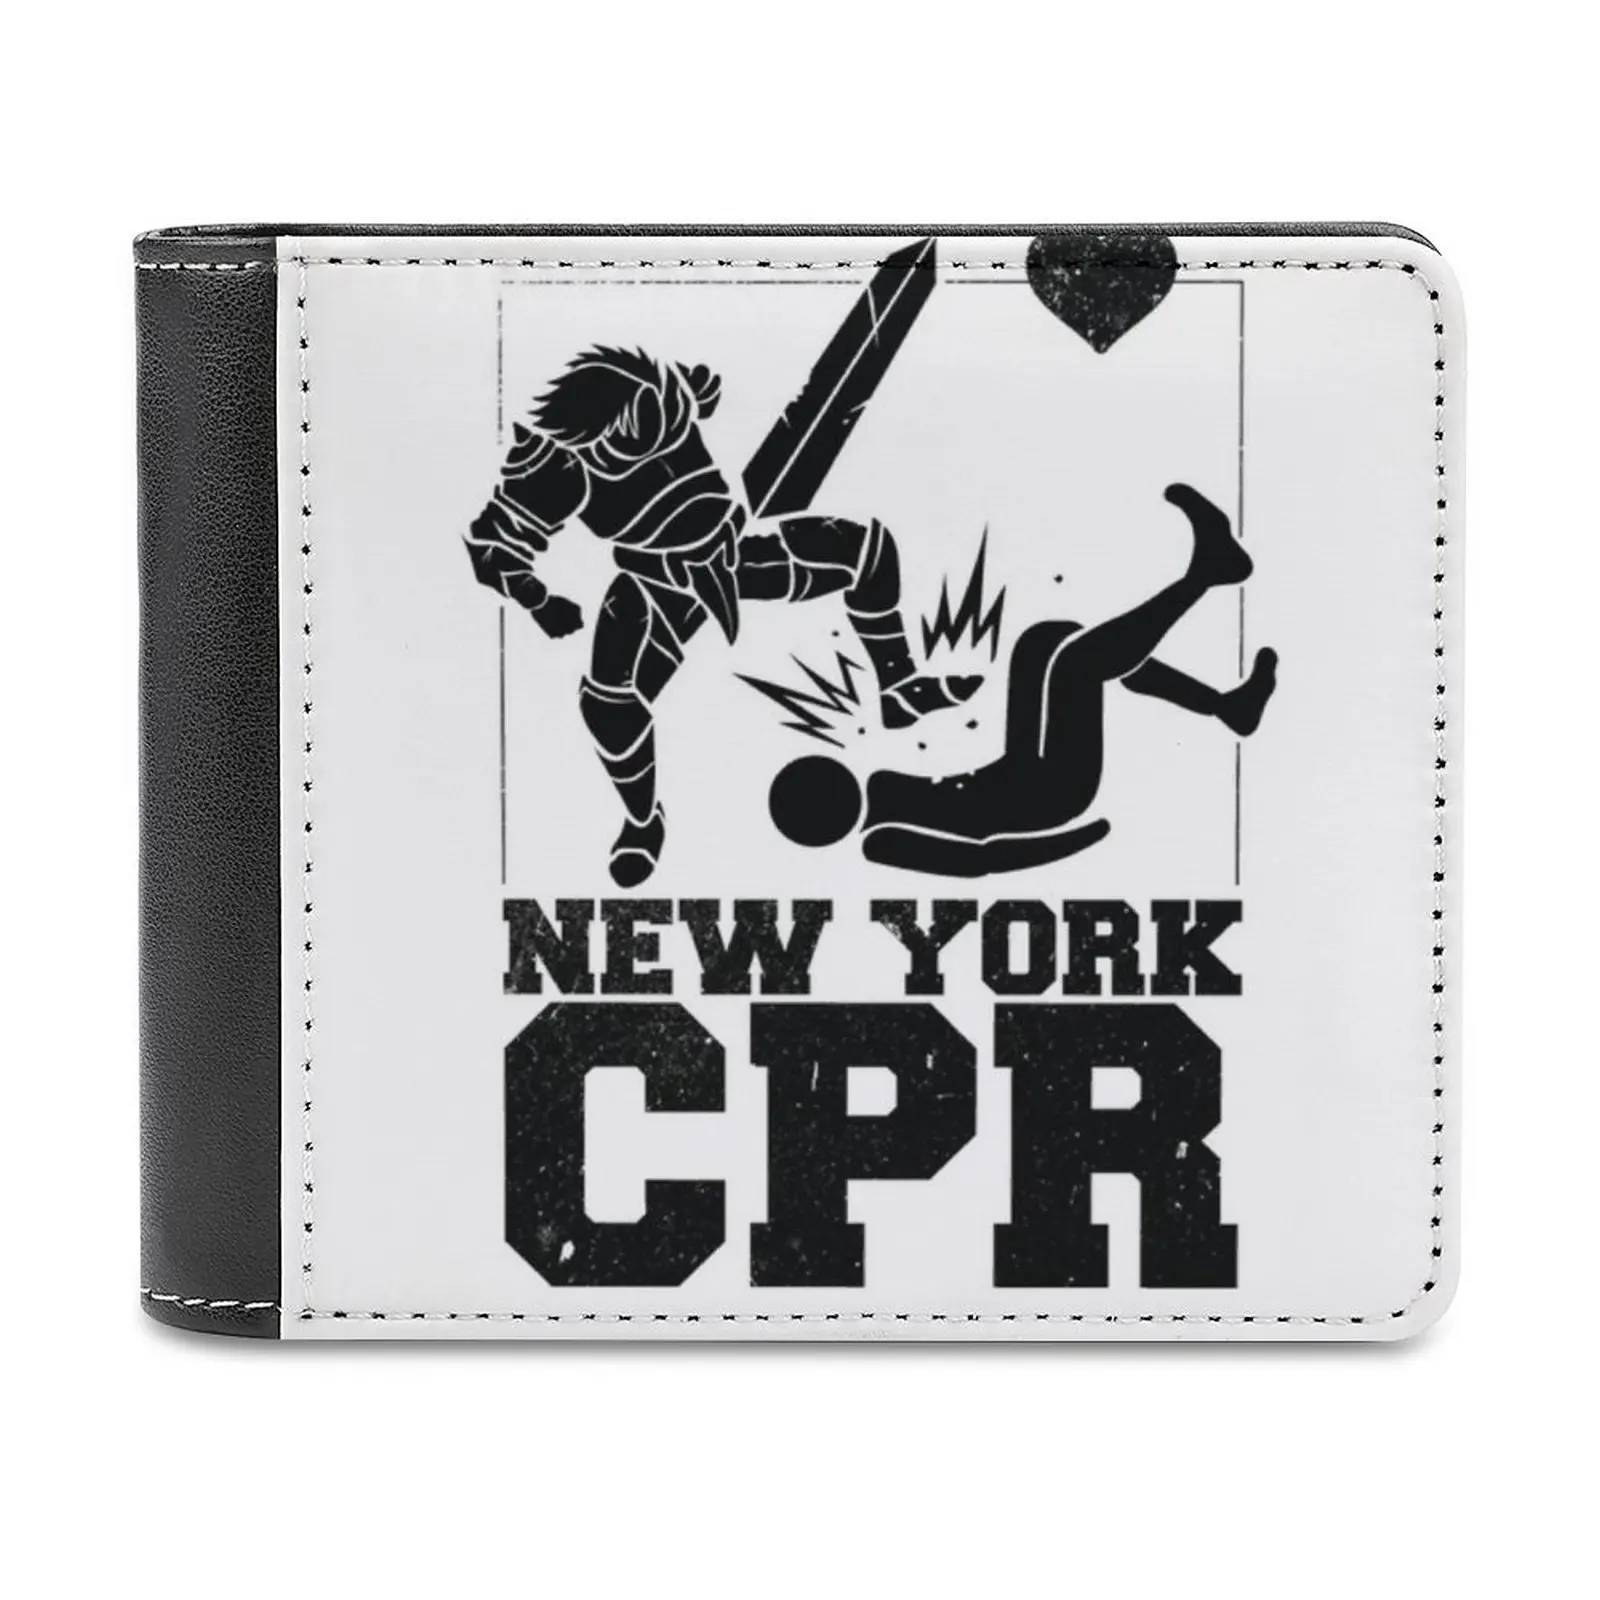 

Мужской кожаный кошелек с рисунком Нью-Йорка, белый укороченный бумажник с несколькими кармашками для карт, модная сумочка для видеоигр и видеоигр